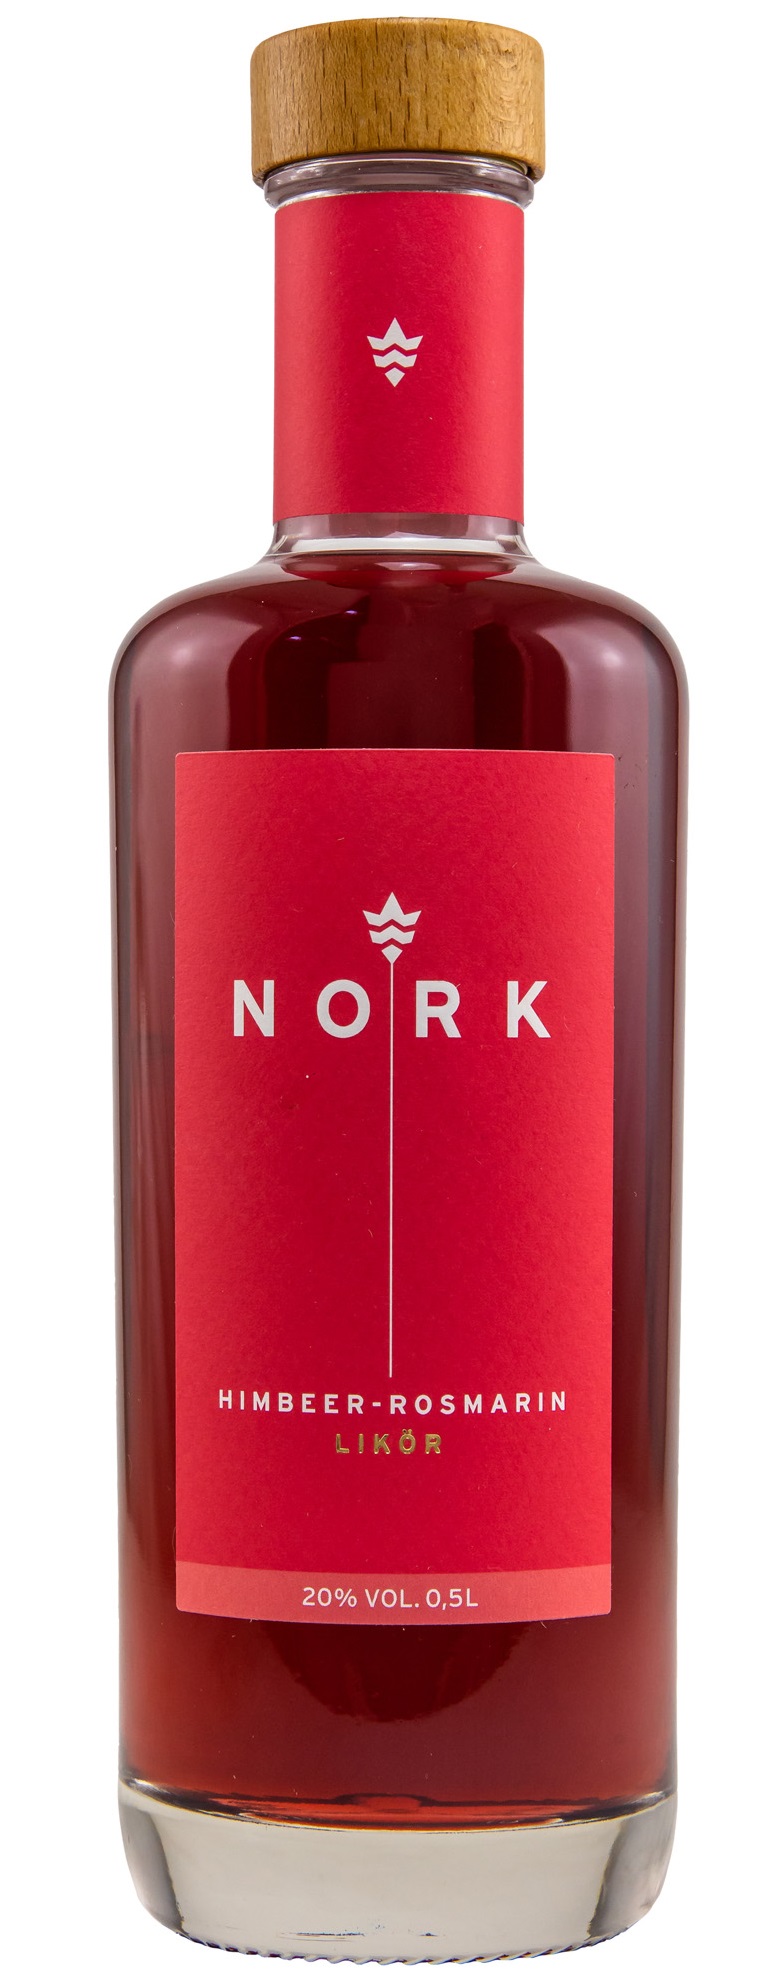 Nork Himbeer-Rosmarin Likör 20.0% 0,5l